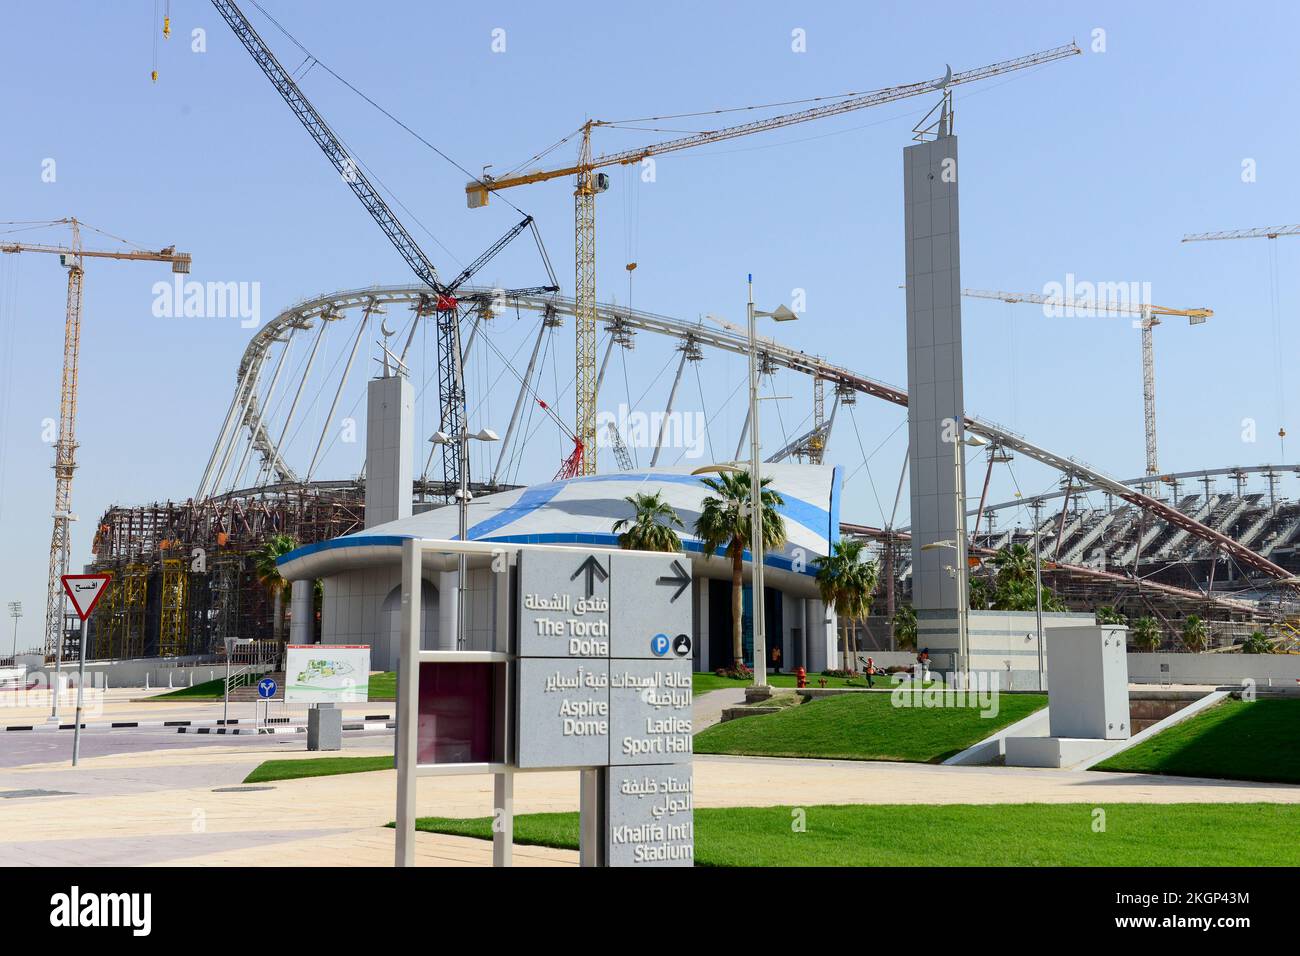 KATAR, Doha, Baustelle Khalifa International Stadion für die FIFA Weltmeisterschaft 2022, gebaut vom Auftragnehmer Midmac und sixt Contract, die Arbeit wird von Wanderarbeitern / KATAR, Doha, Baustelle Khalifa International Stadium für die FIFA Fussballmeisterschaft 2022, auf den Ländern Gastarbeitern aus verschiedenen Baustellen geleistet Stockfoto